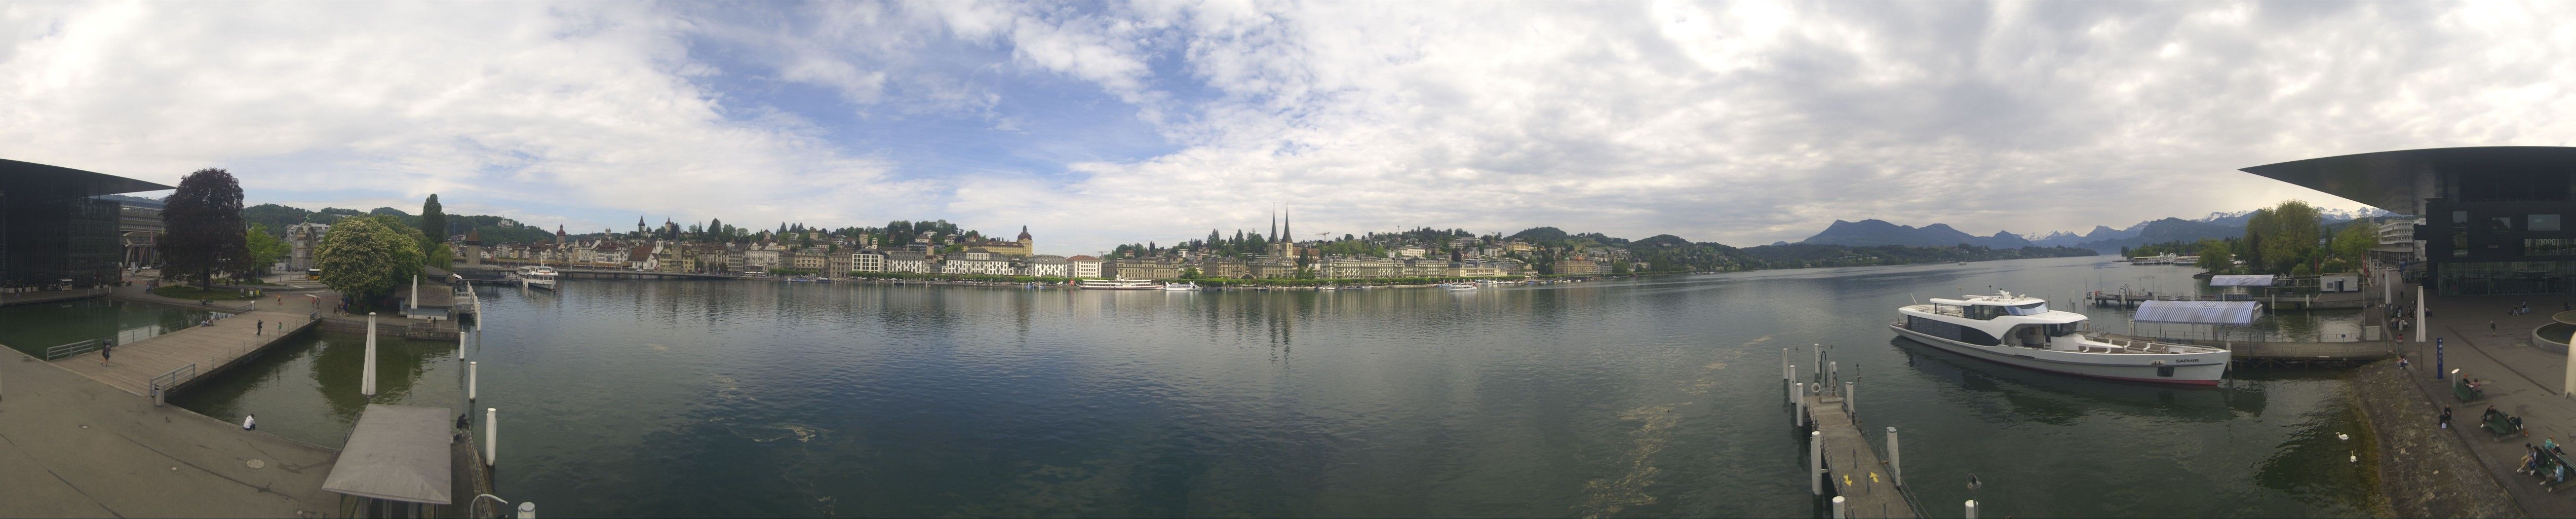 Luzern: Vierwaldstättersee